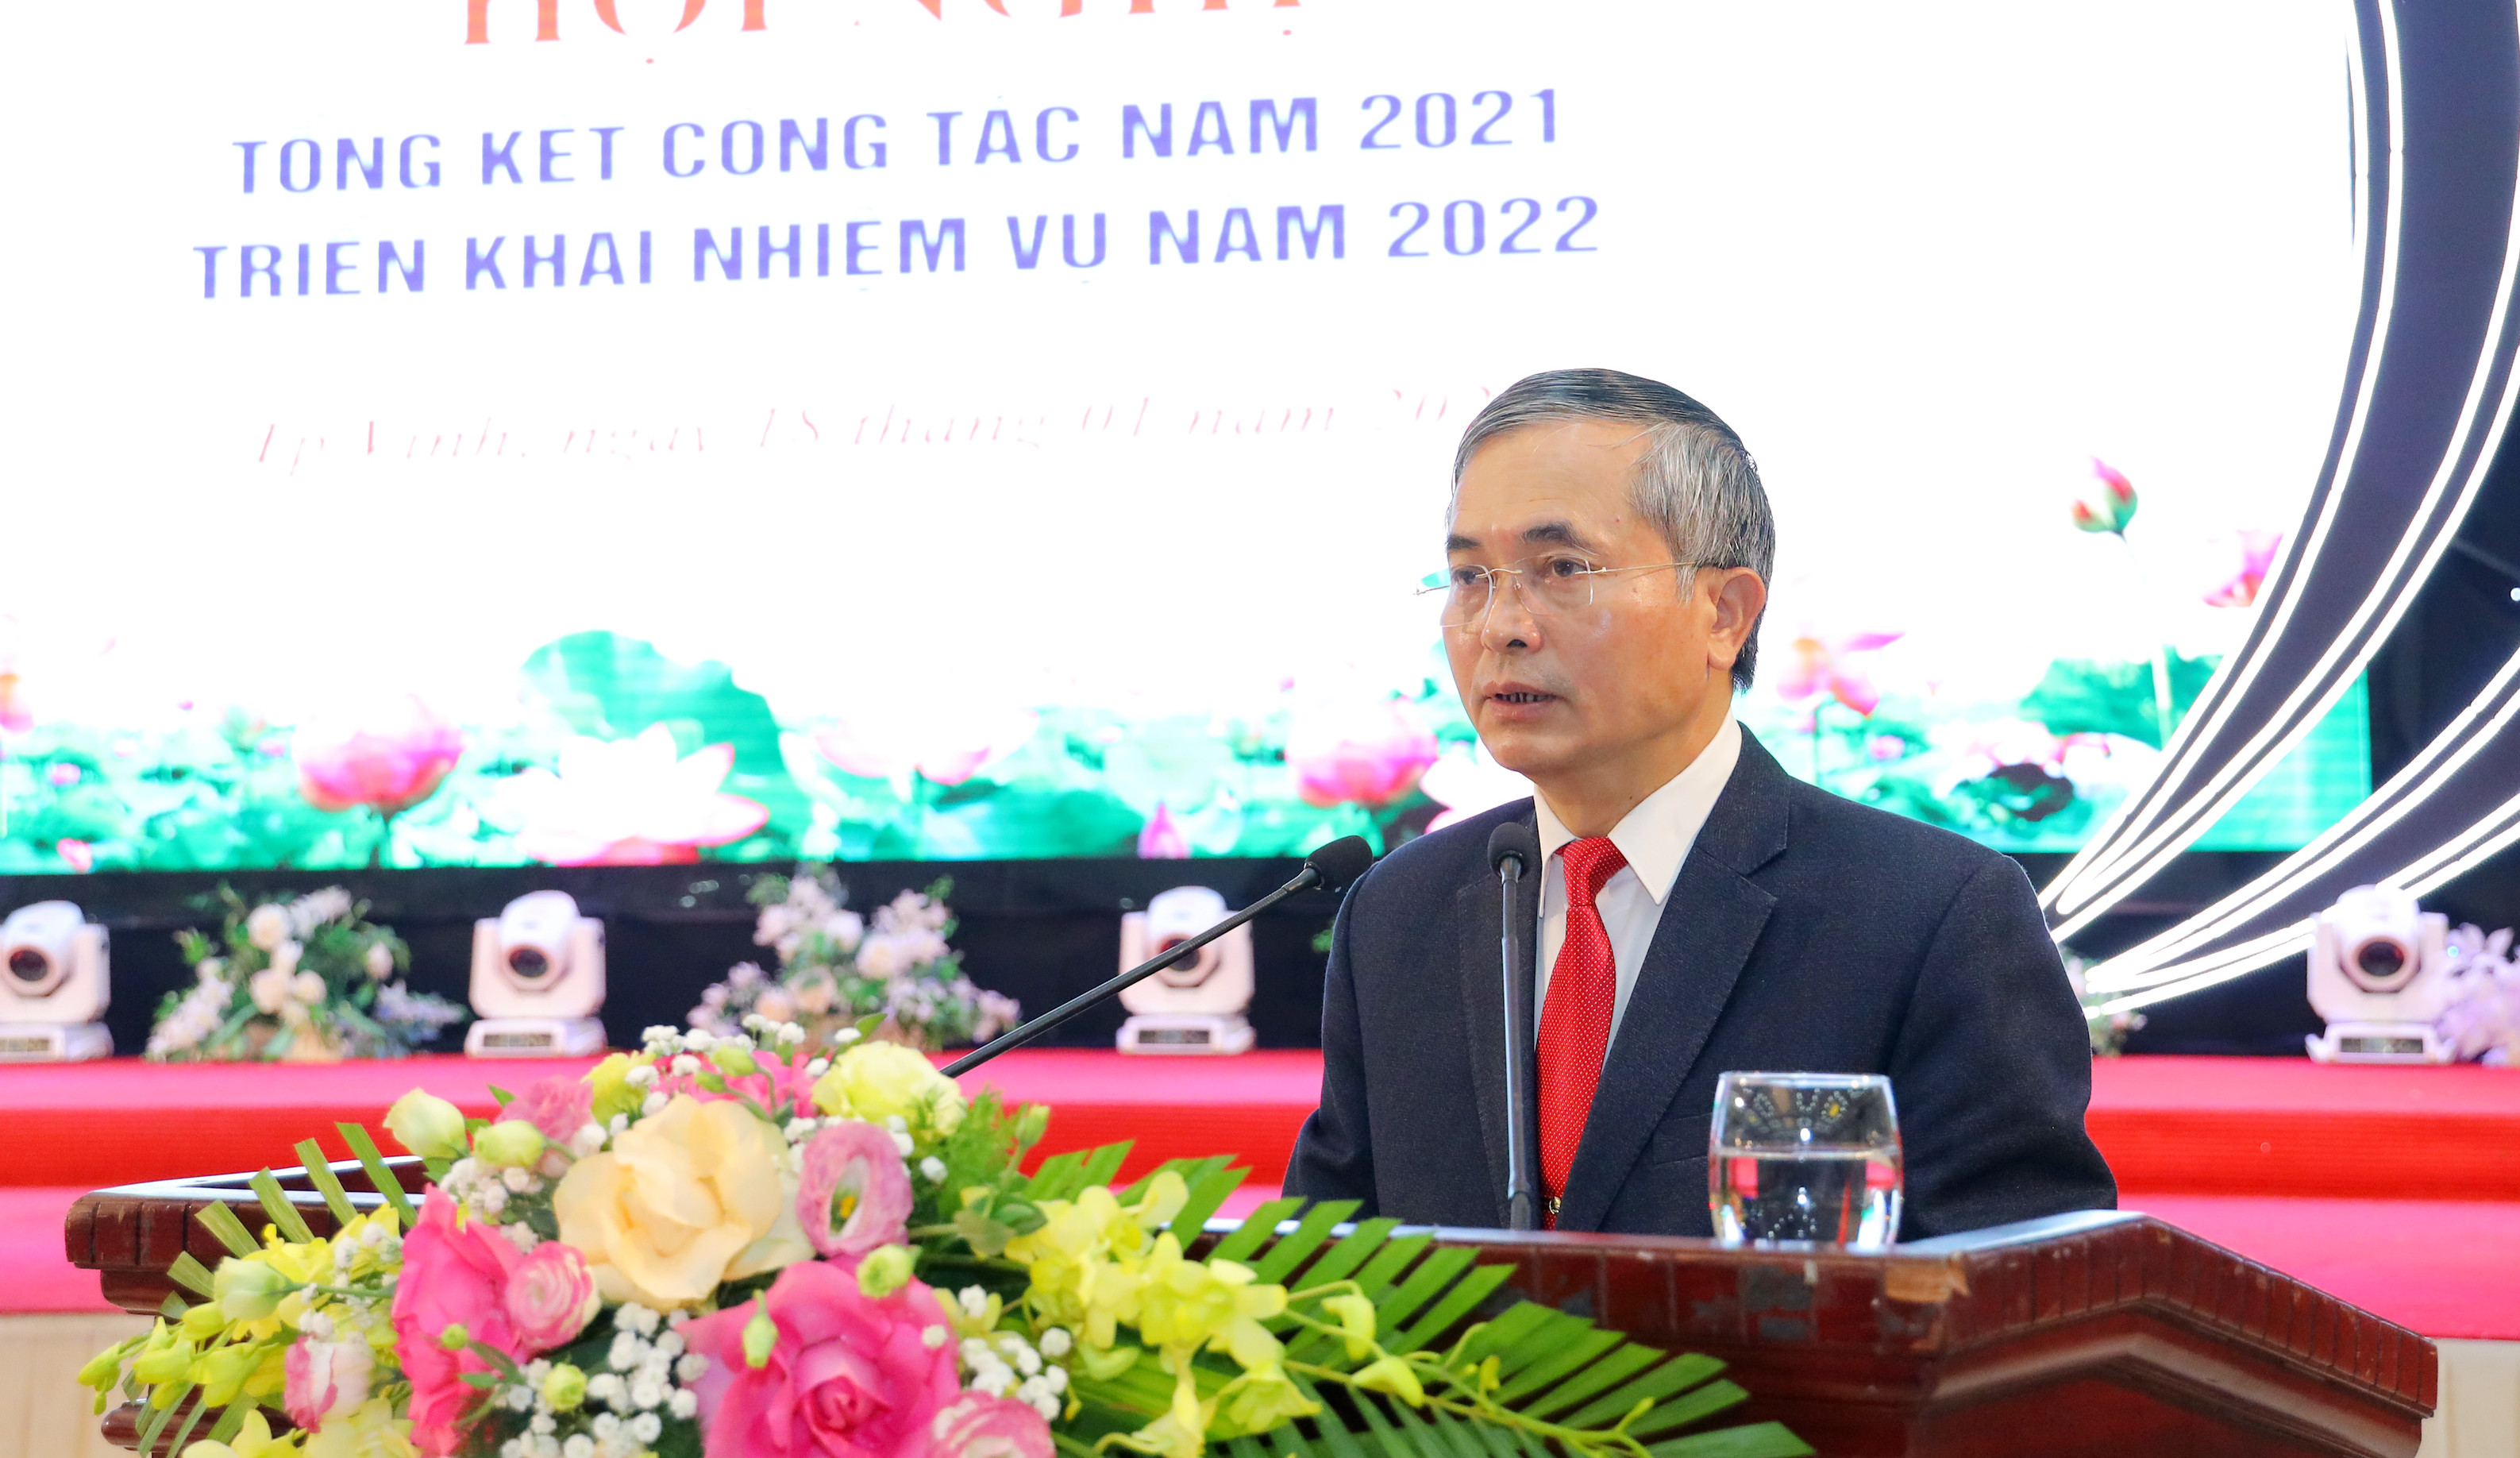 Đồng chí Lê Ngọc Hoa - Phó Chủ tịch UBND tỉnh phát biểu tại hội nghị. Ảnh Nguyên Sơn